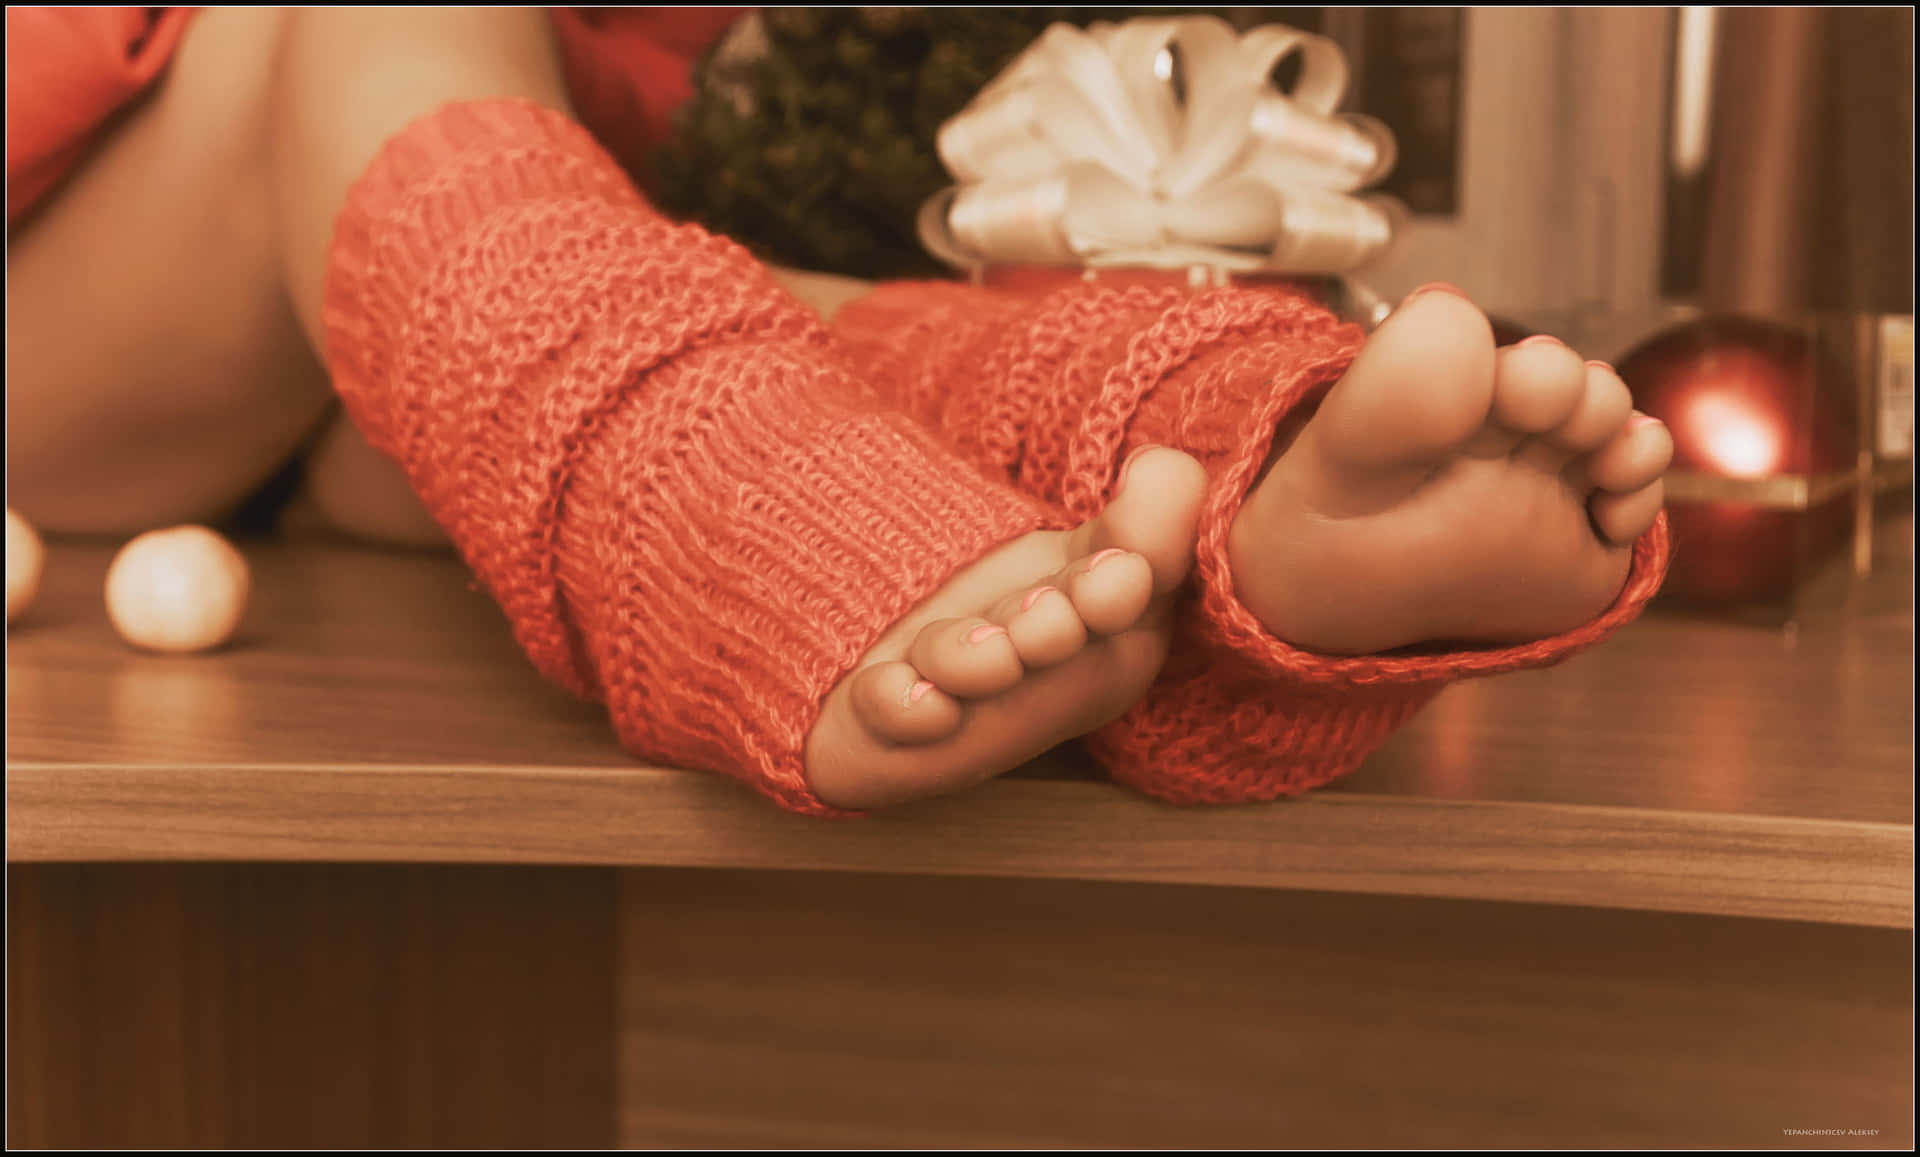 Girl’s Feet Dressed in Cozy Knitted Socks Wallpaper